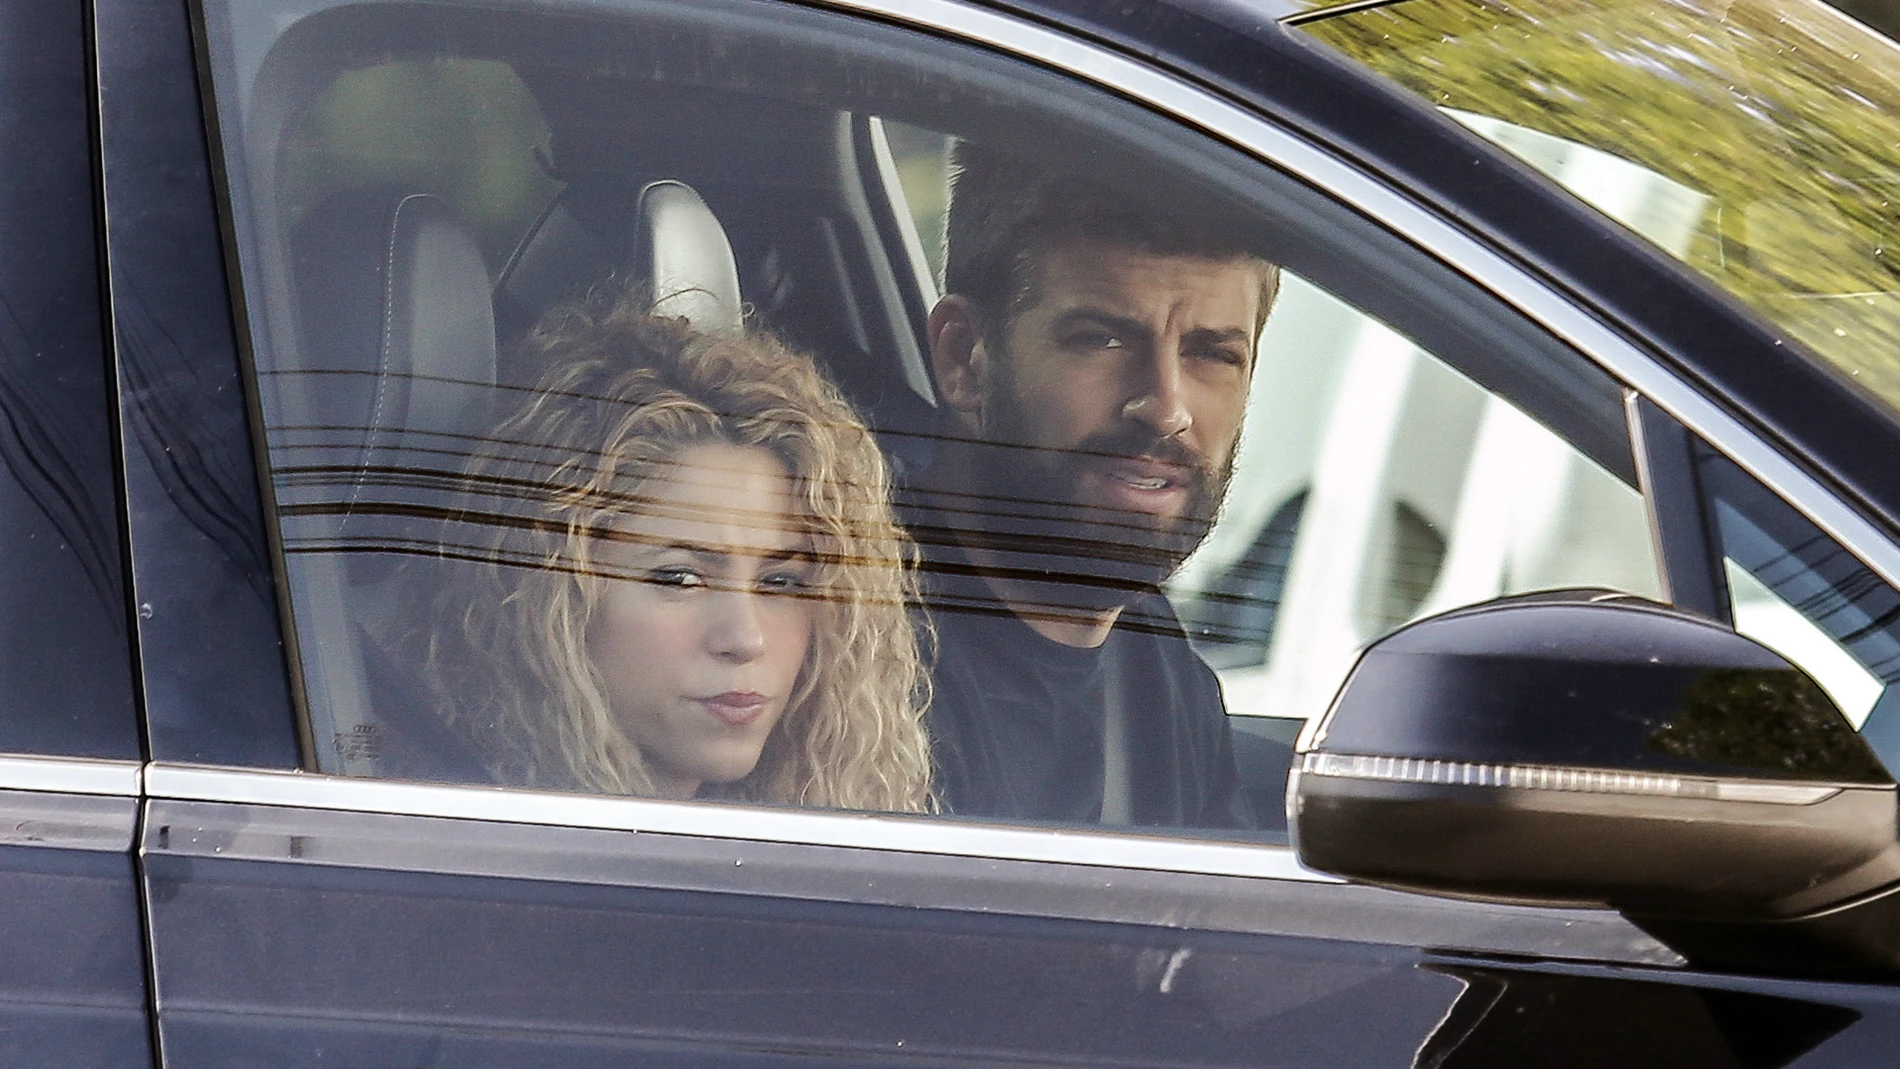 Shakira y Piqué en una imagen de archivo